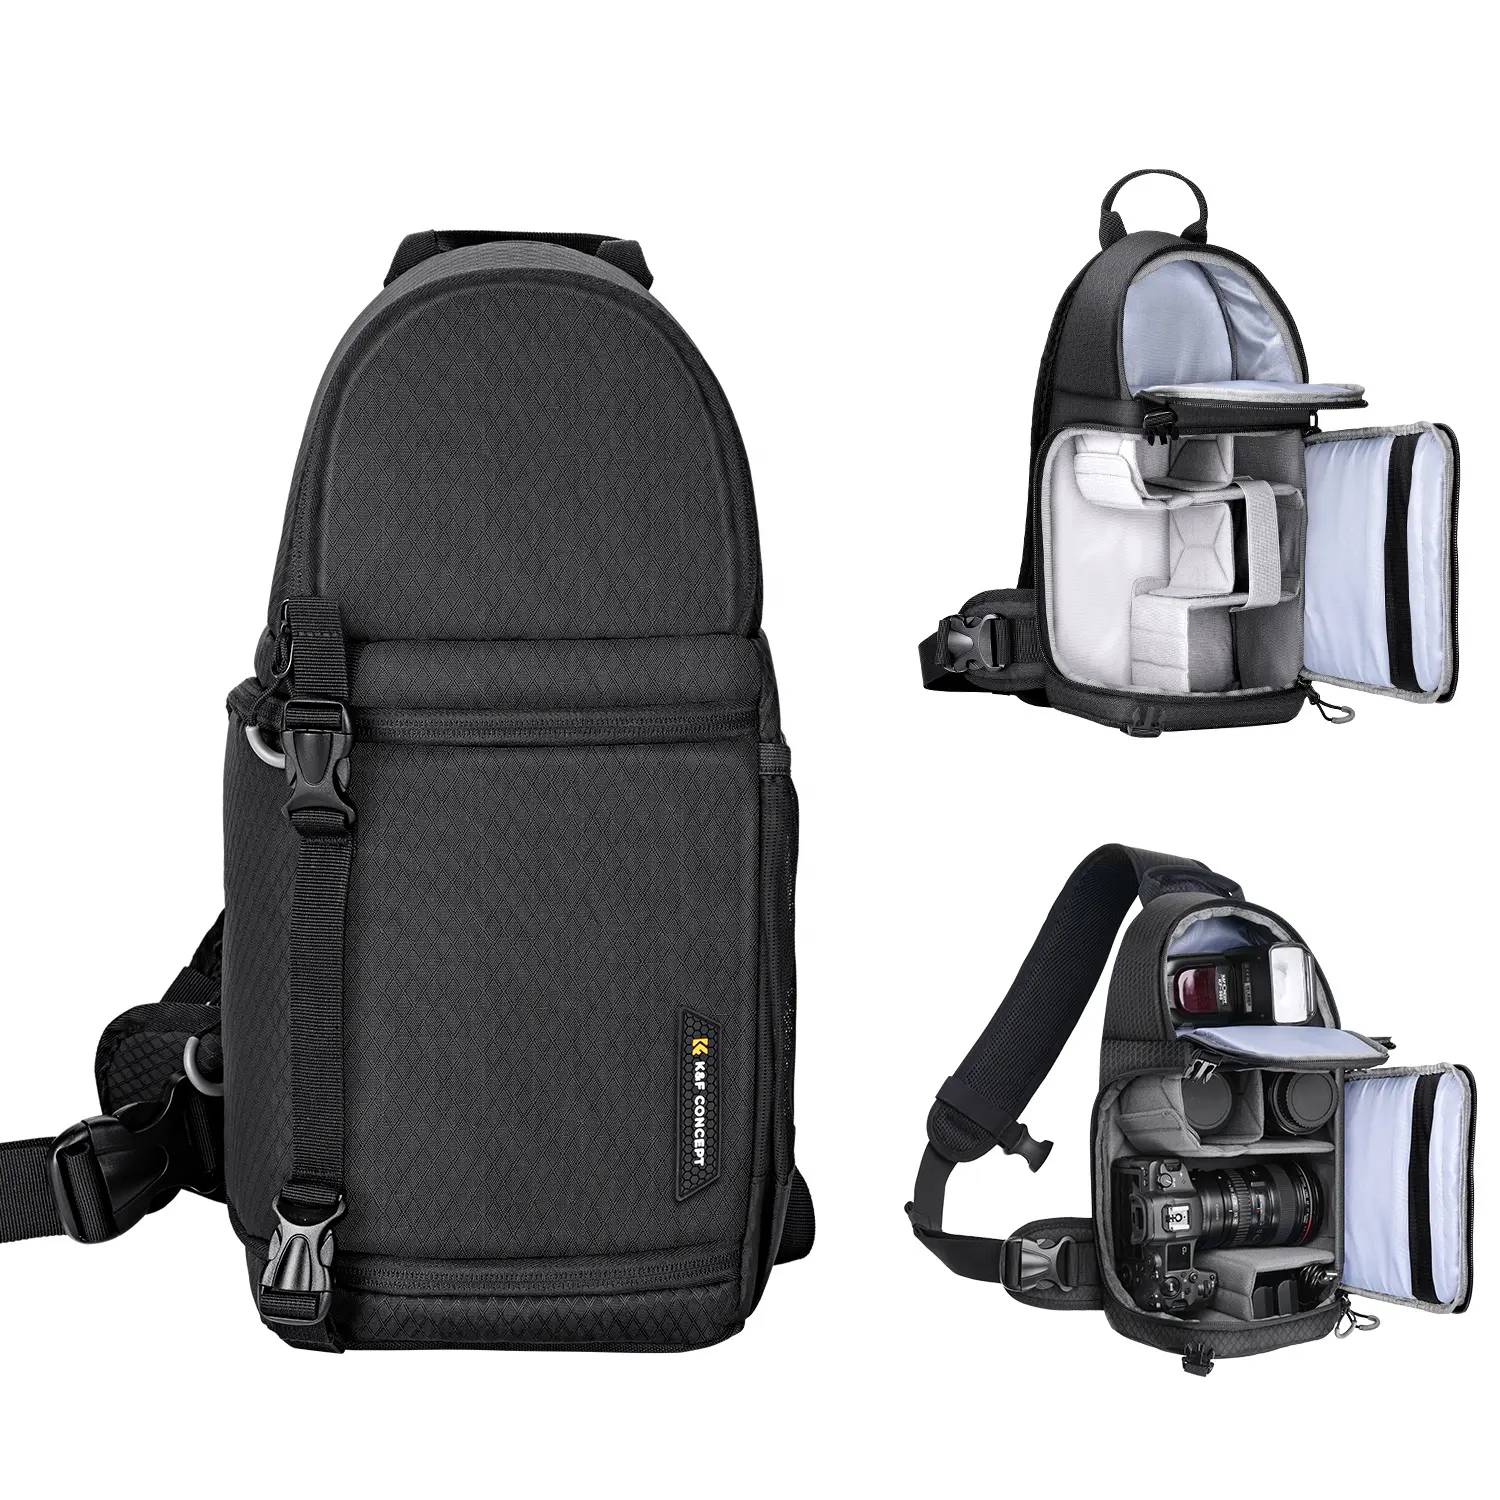 K & F konsept kamera paketi su geçirmez ve darbeye dayanıklı kayış sırt çantası ayarlanabilir çapraz vücut askısı